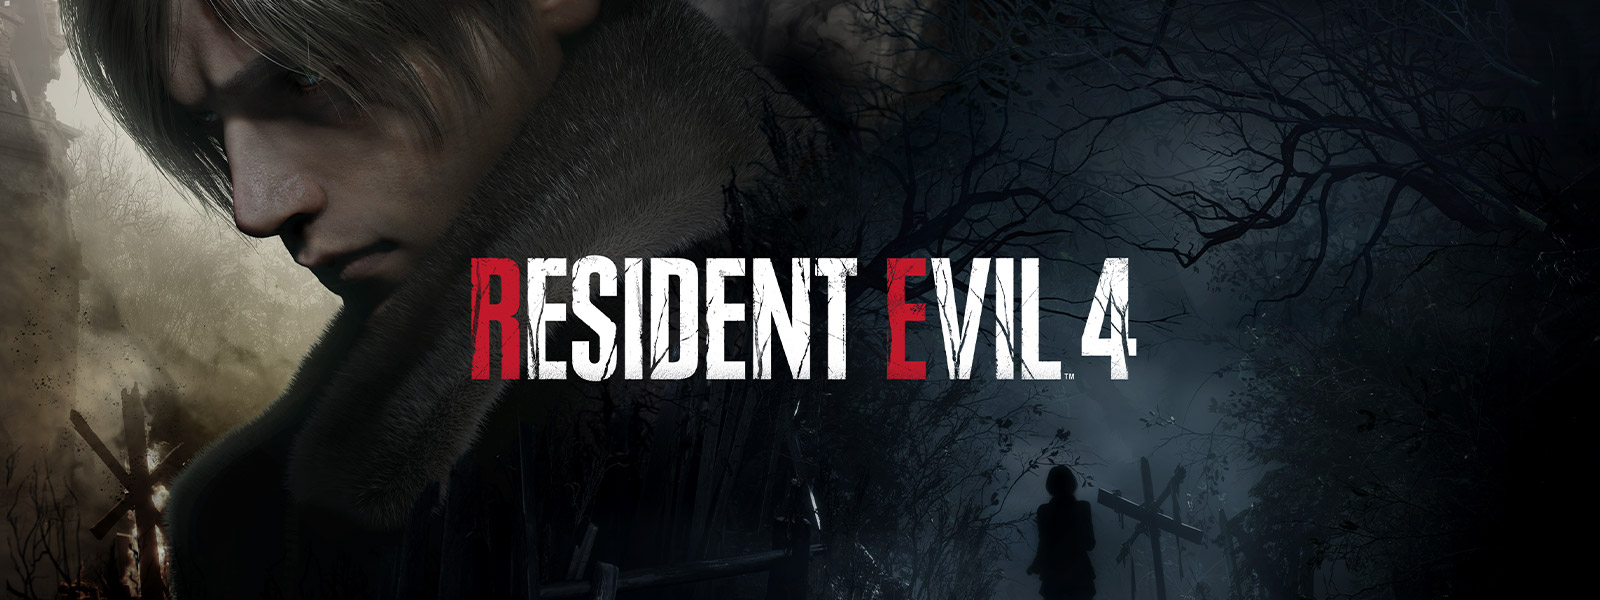 Resident Evil 4, Bir kadın karanlık, ürkütücü bir orman yolunda yürürken gri saçlı bir adam ağırbaşlı bir şekilde arkasını dönüyor.